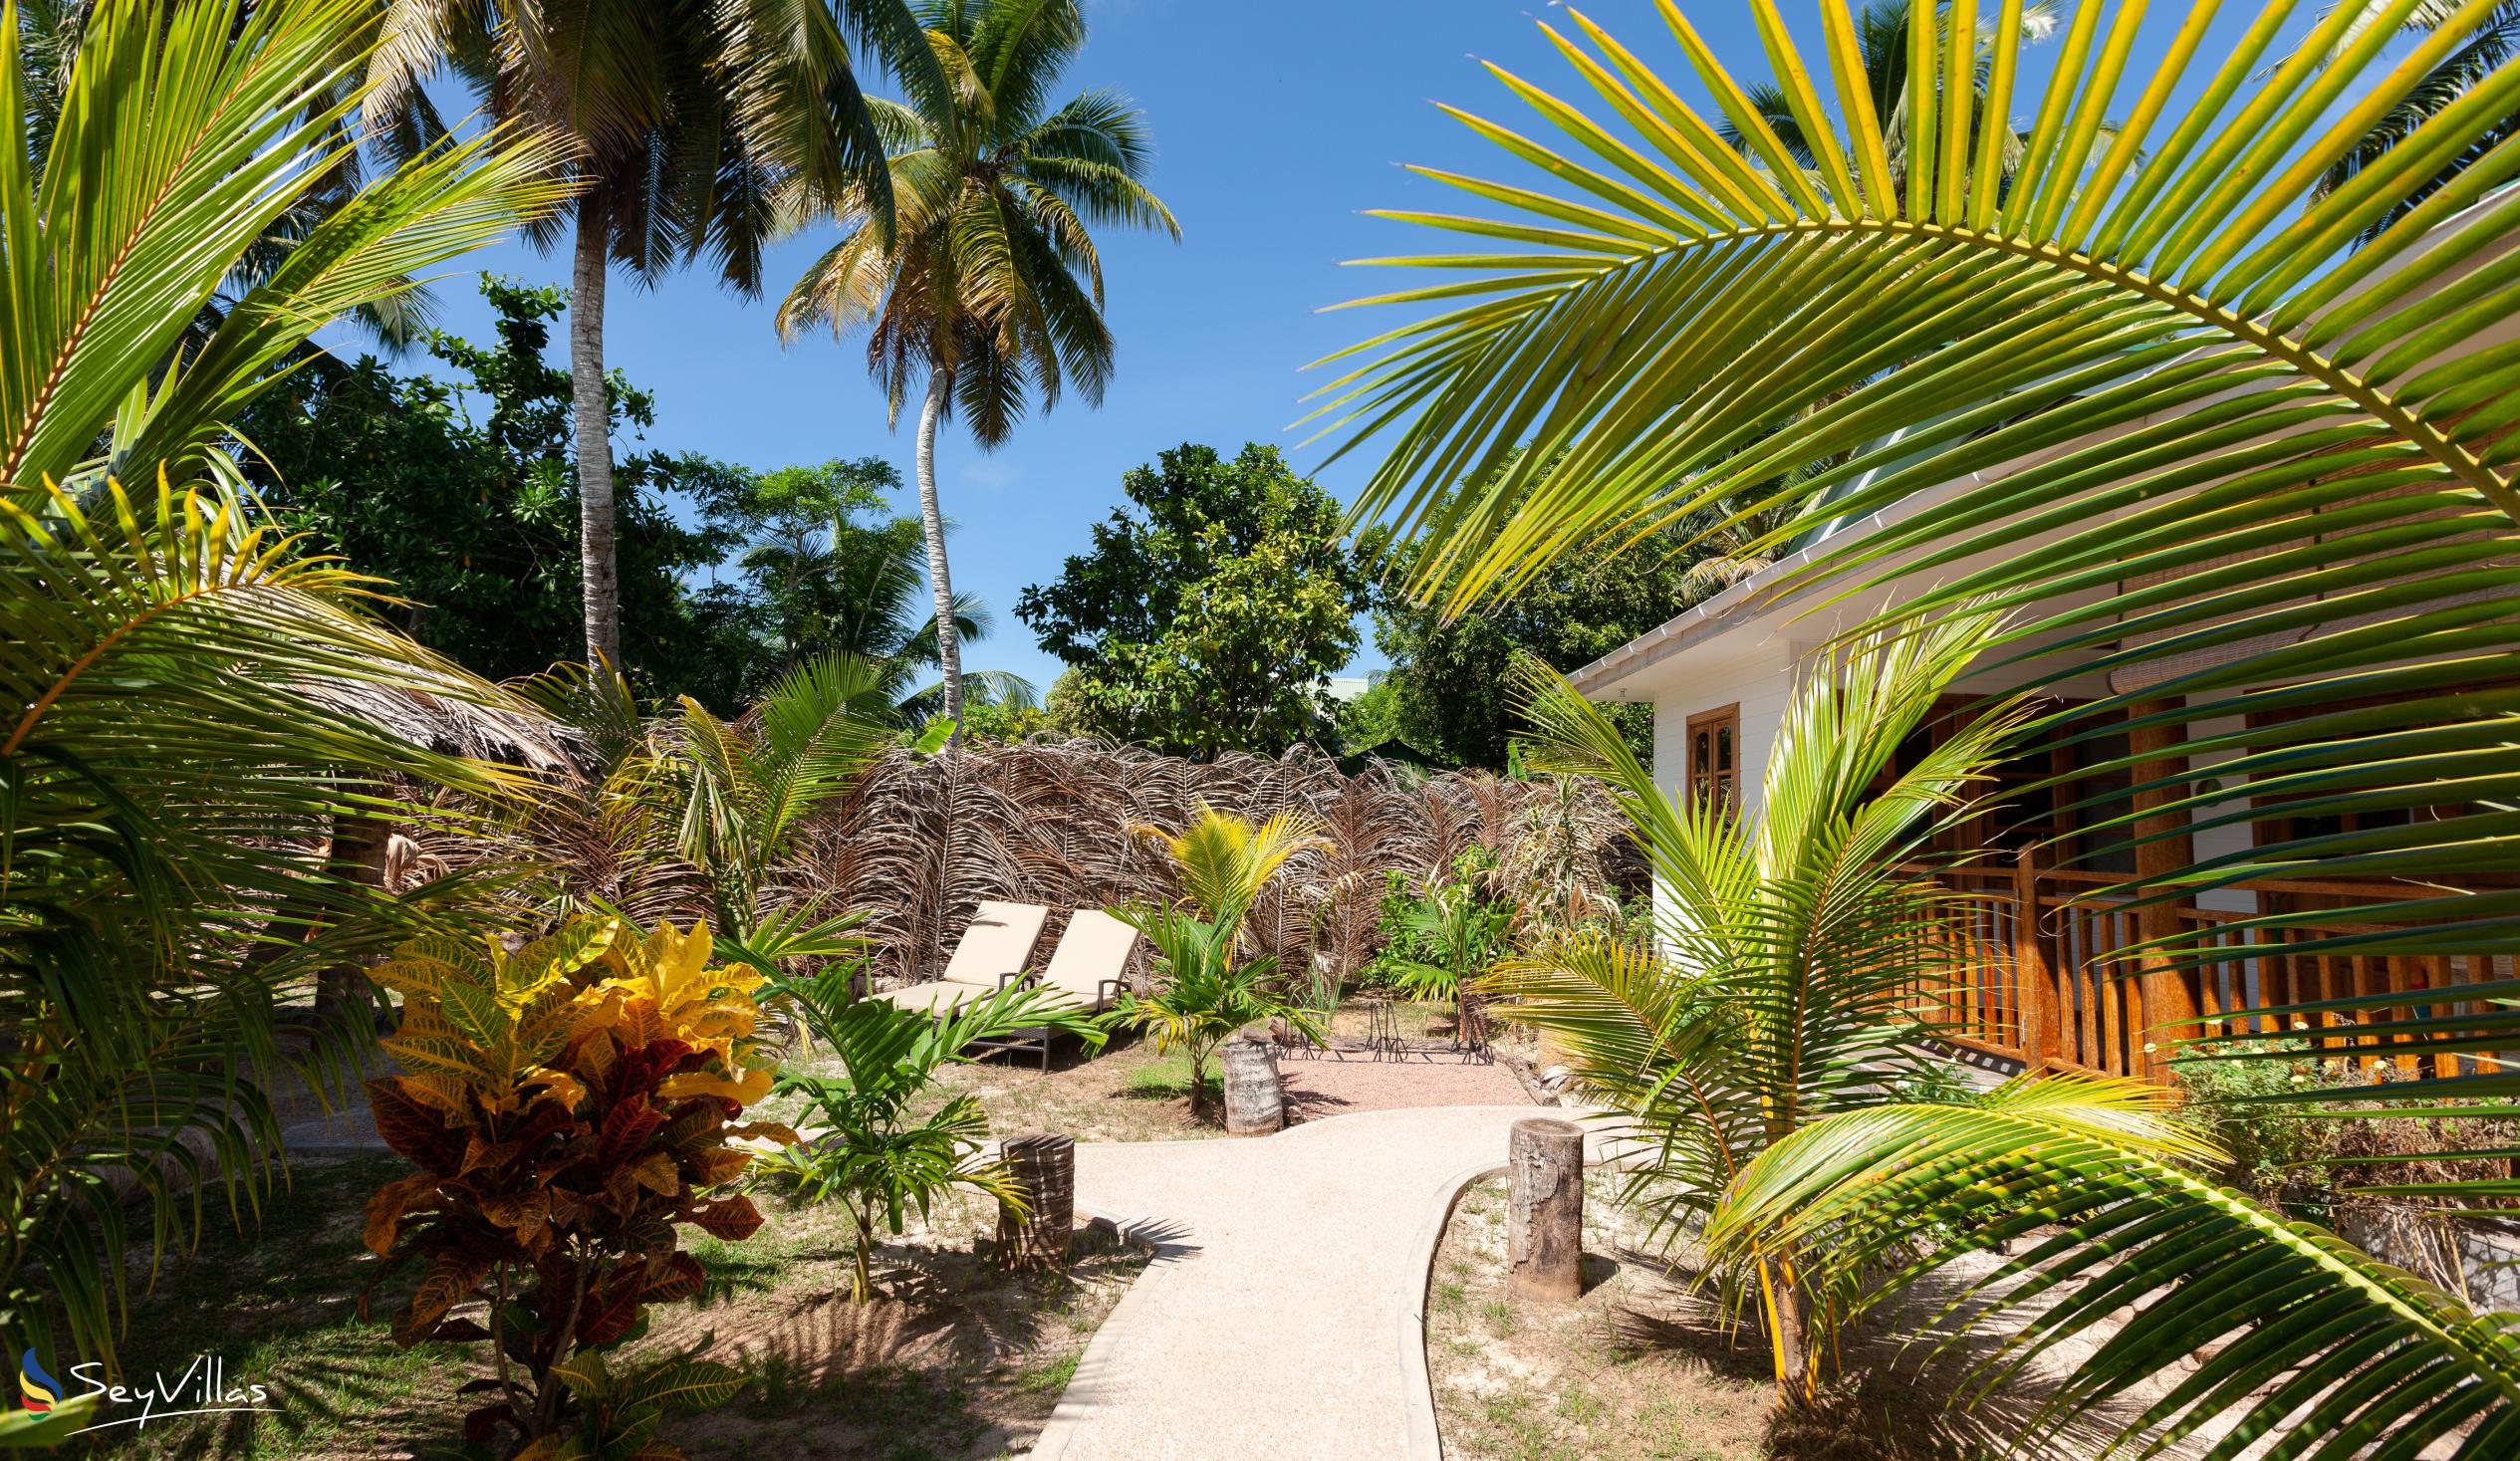 Photo 8: Coco de Mahi - Outdoor area - La Digue (Seychelles)